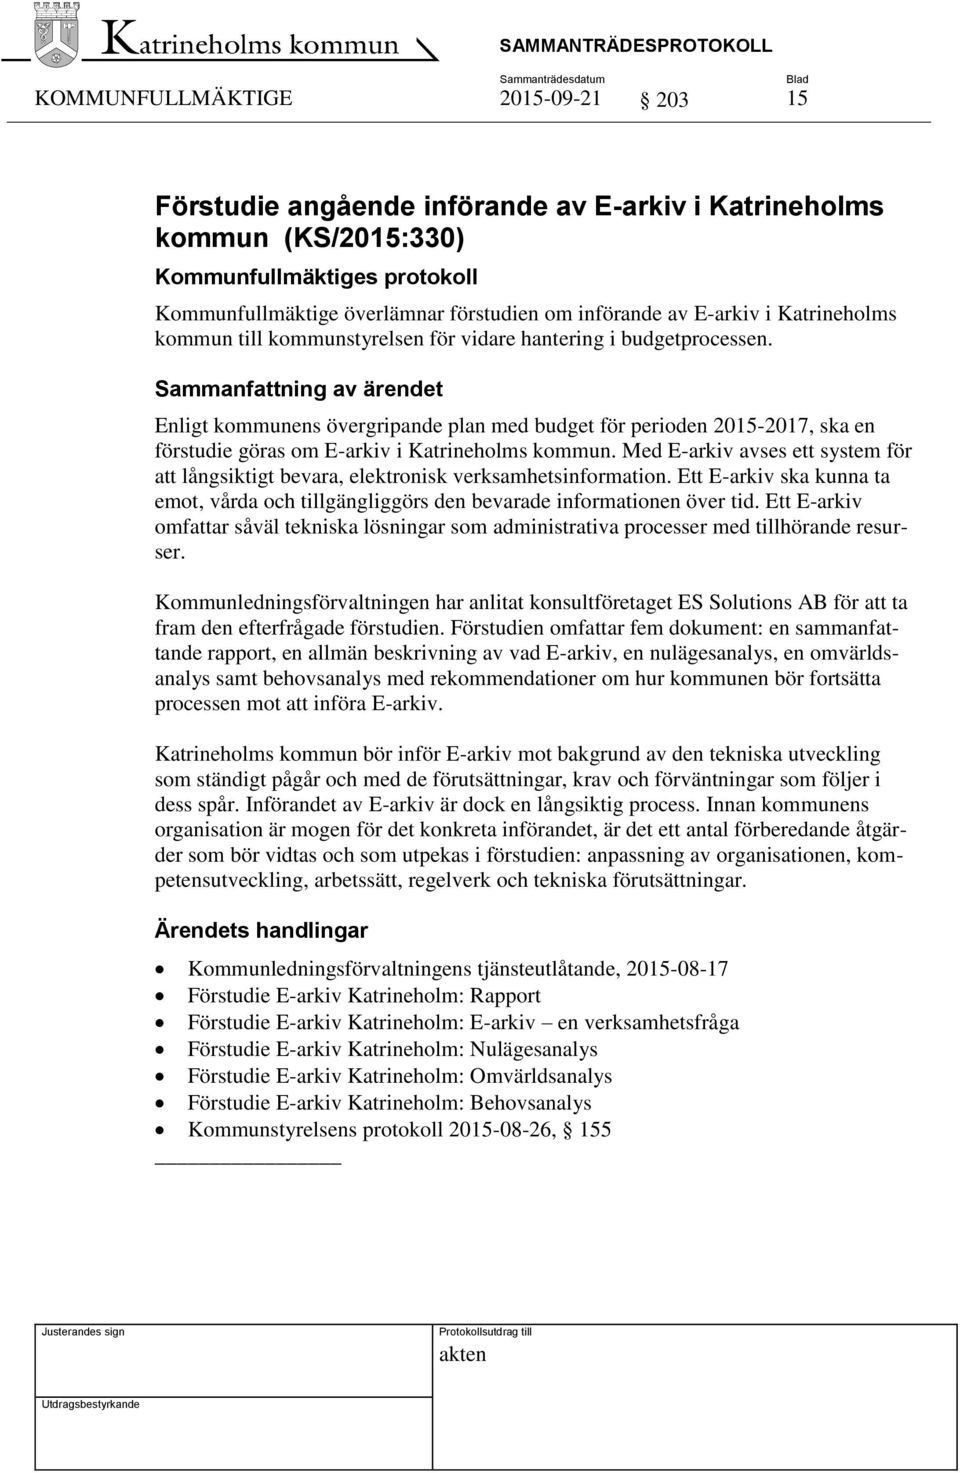 Enligt kommunens övergripande plan med budget för perioden 2015-2017, ska en förstudie göras om E-arkiv i Katrineholms kommun.